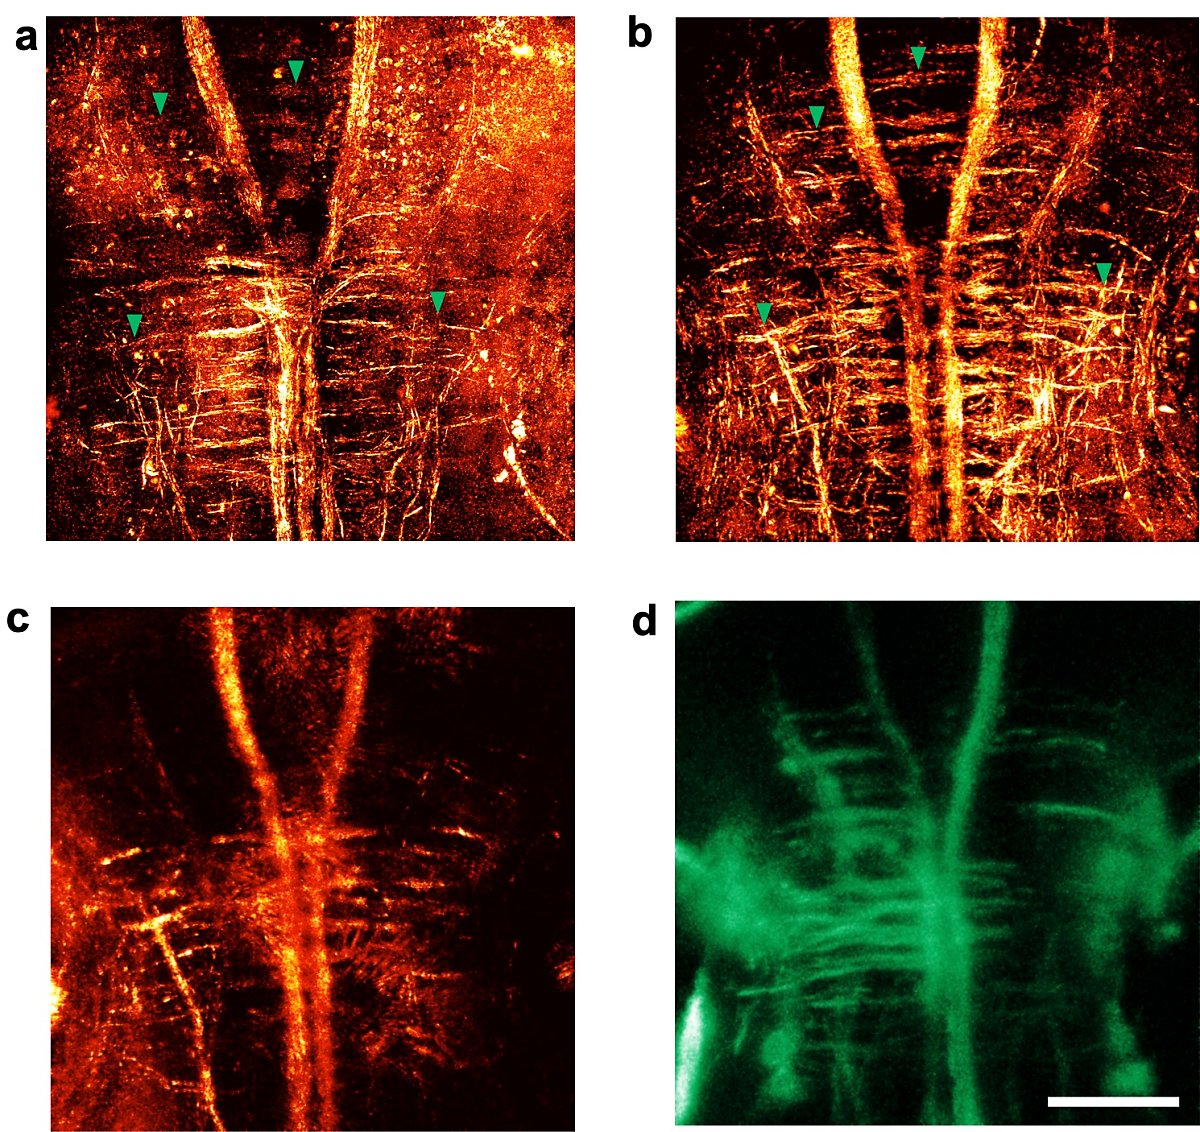 홀로그램 현미경으로 부화한 지 각각 6일(a), 10일(b) 된 제브라피쉬의 신경망 구조를 관찰했다. 일반 현미경으로 얻은 영상(c, d)에 비해 훨씬 고해상도로 보임을 알 수 있다. (출처 : IBS)